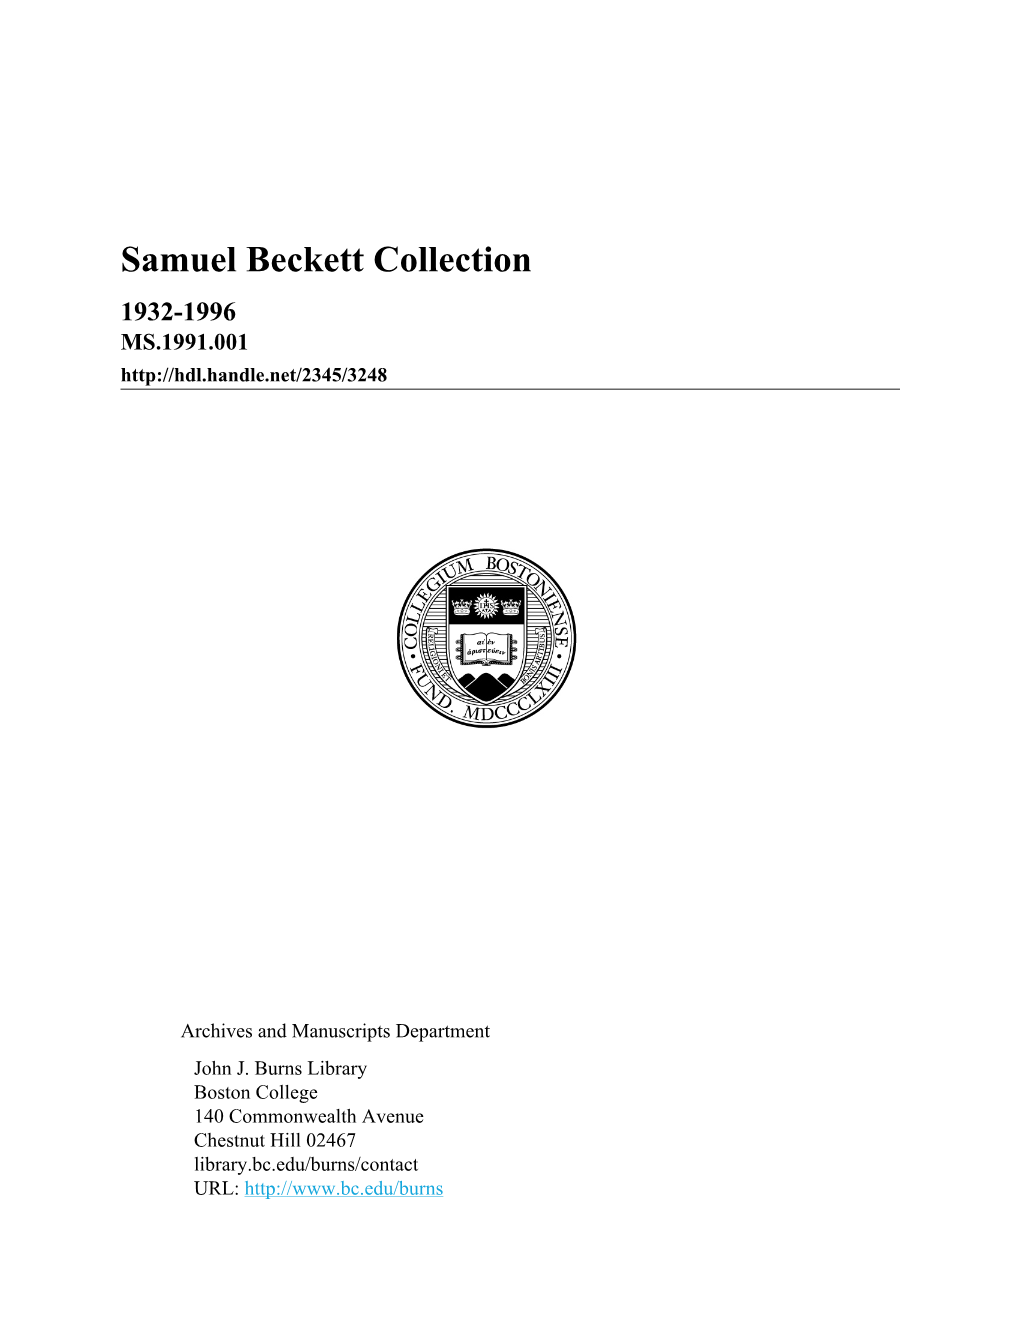 Samuel Beckett Collection 1932-1996 MS.1991.001